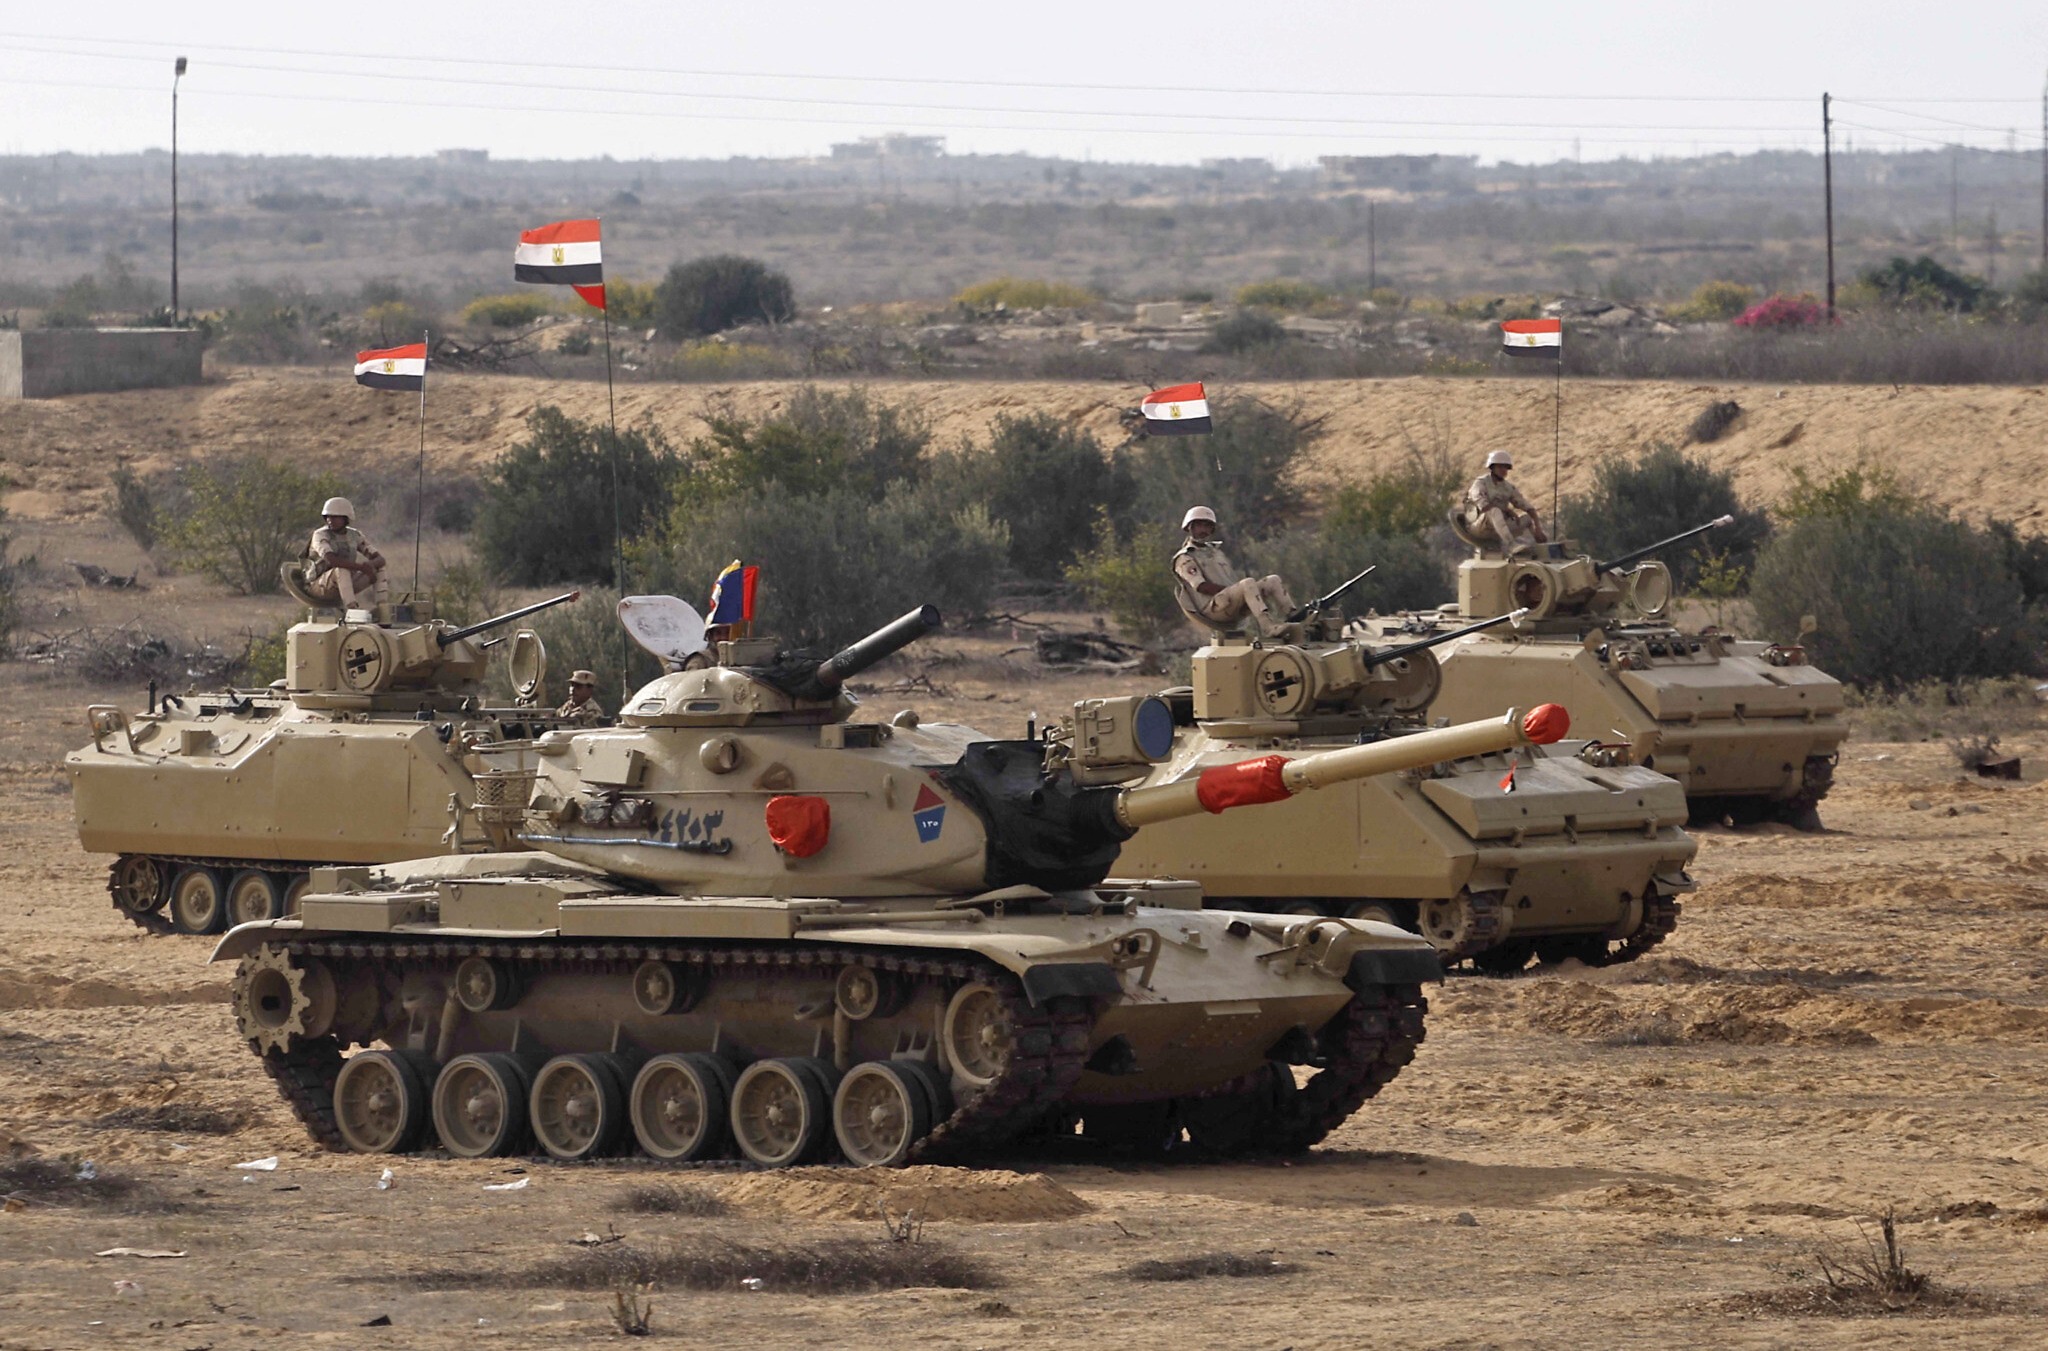 خاص: حصلت مؤسسة سيناء على صور حصرية لوصول تعزيزات عسكرية مصرية جديدة بالقرب من الحدود الدولية شرقي سيناء